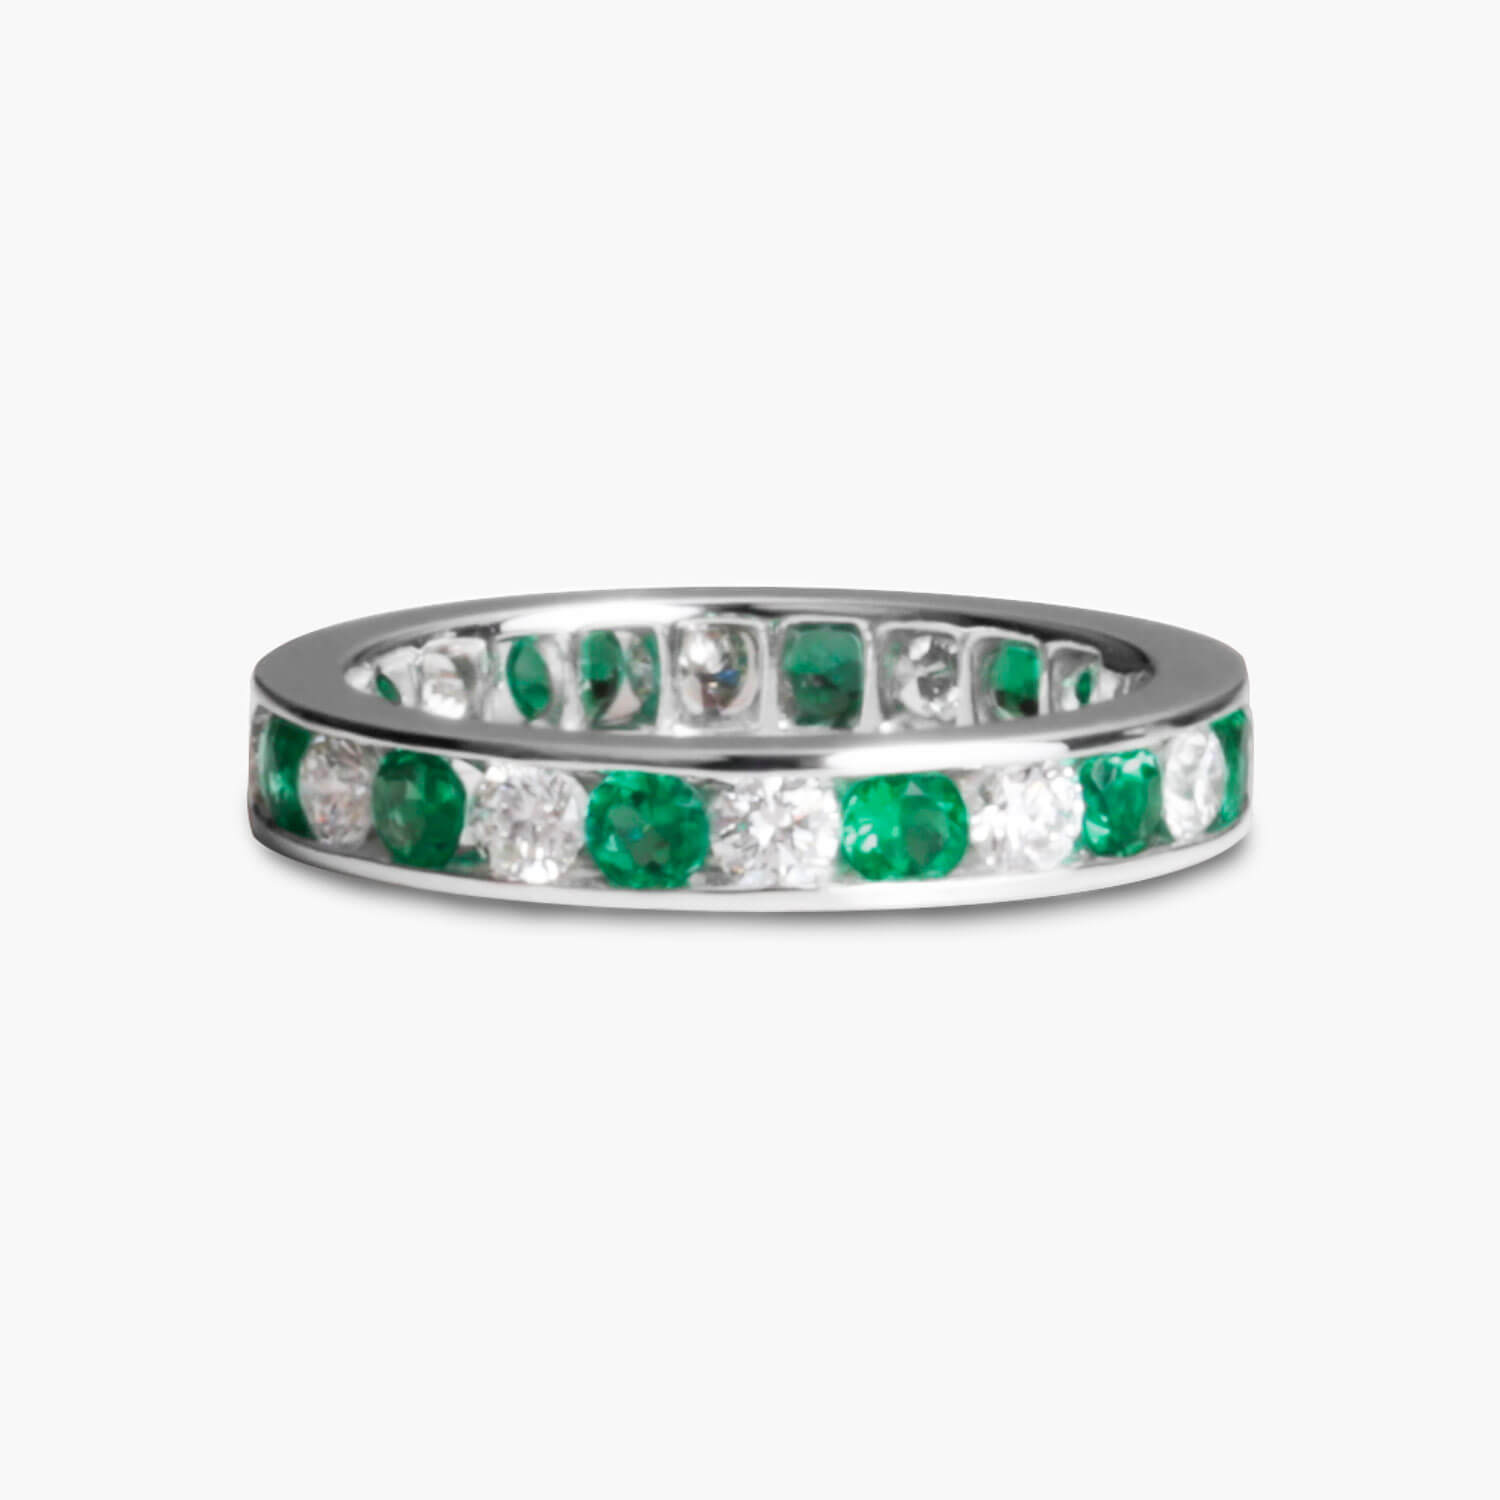 Tony’s Emerald and Diamond Eternity Ring